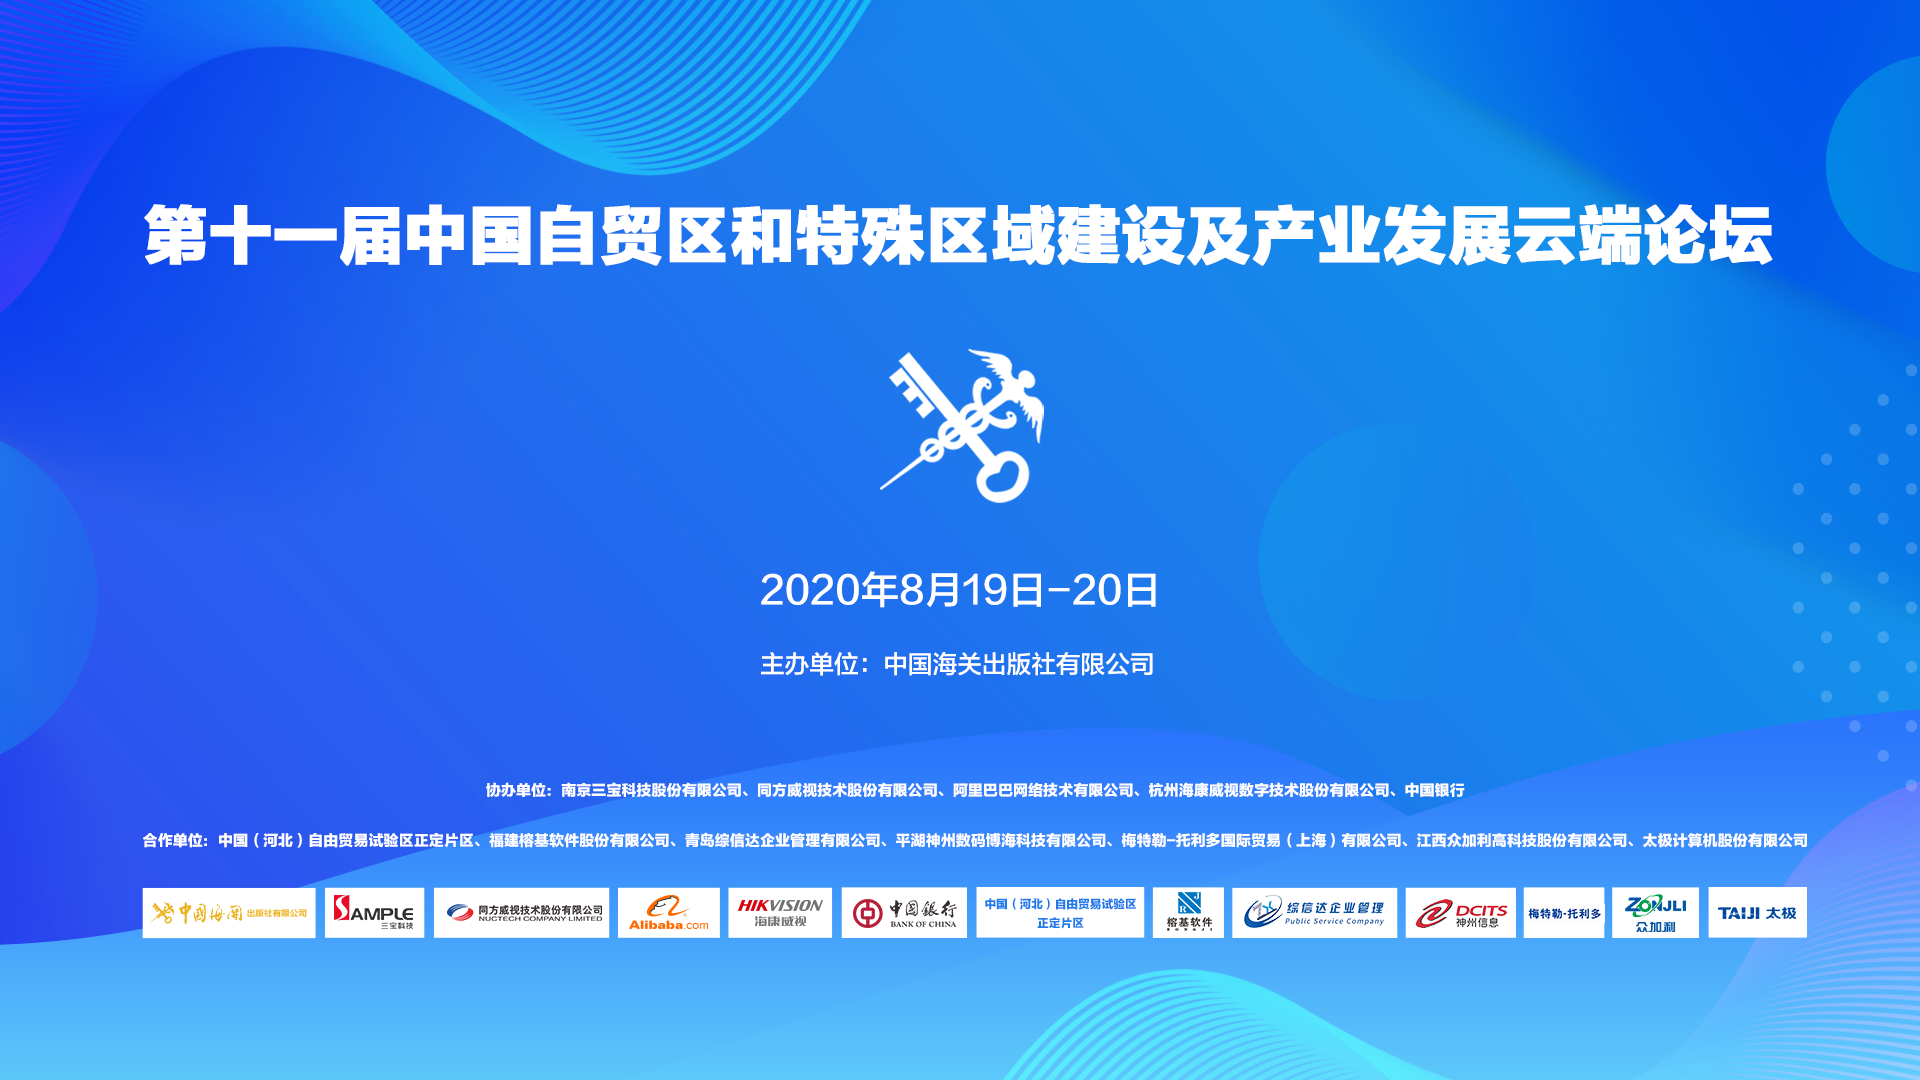 快讯 | 三宝科技受邀参加第十一届中国自贸区及特殊区域建设及产业发展云端论坛